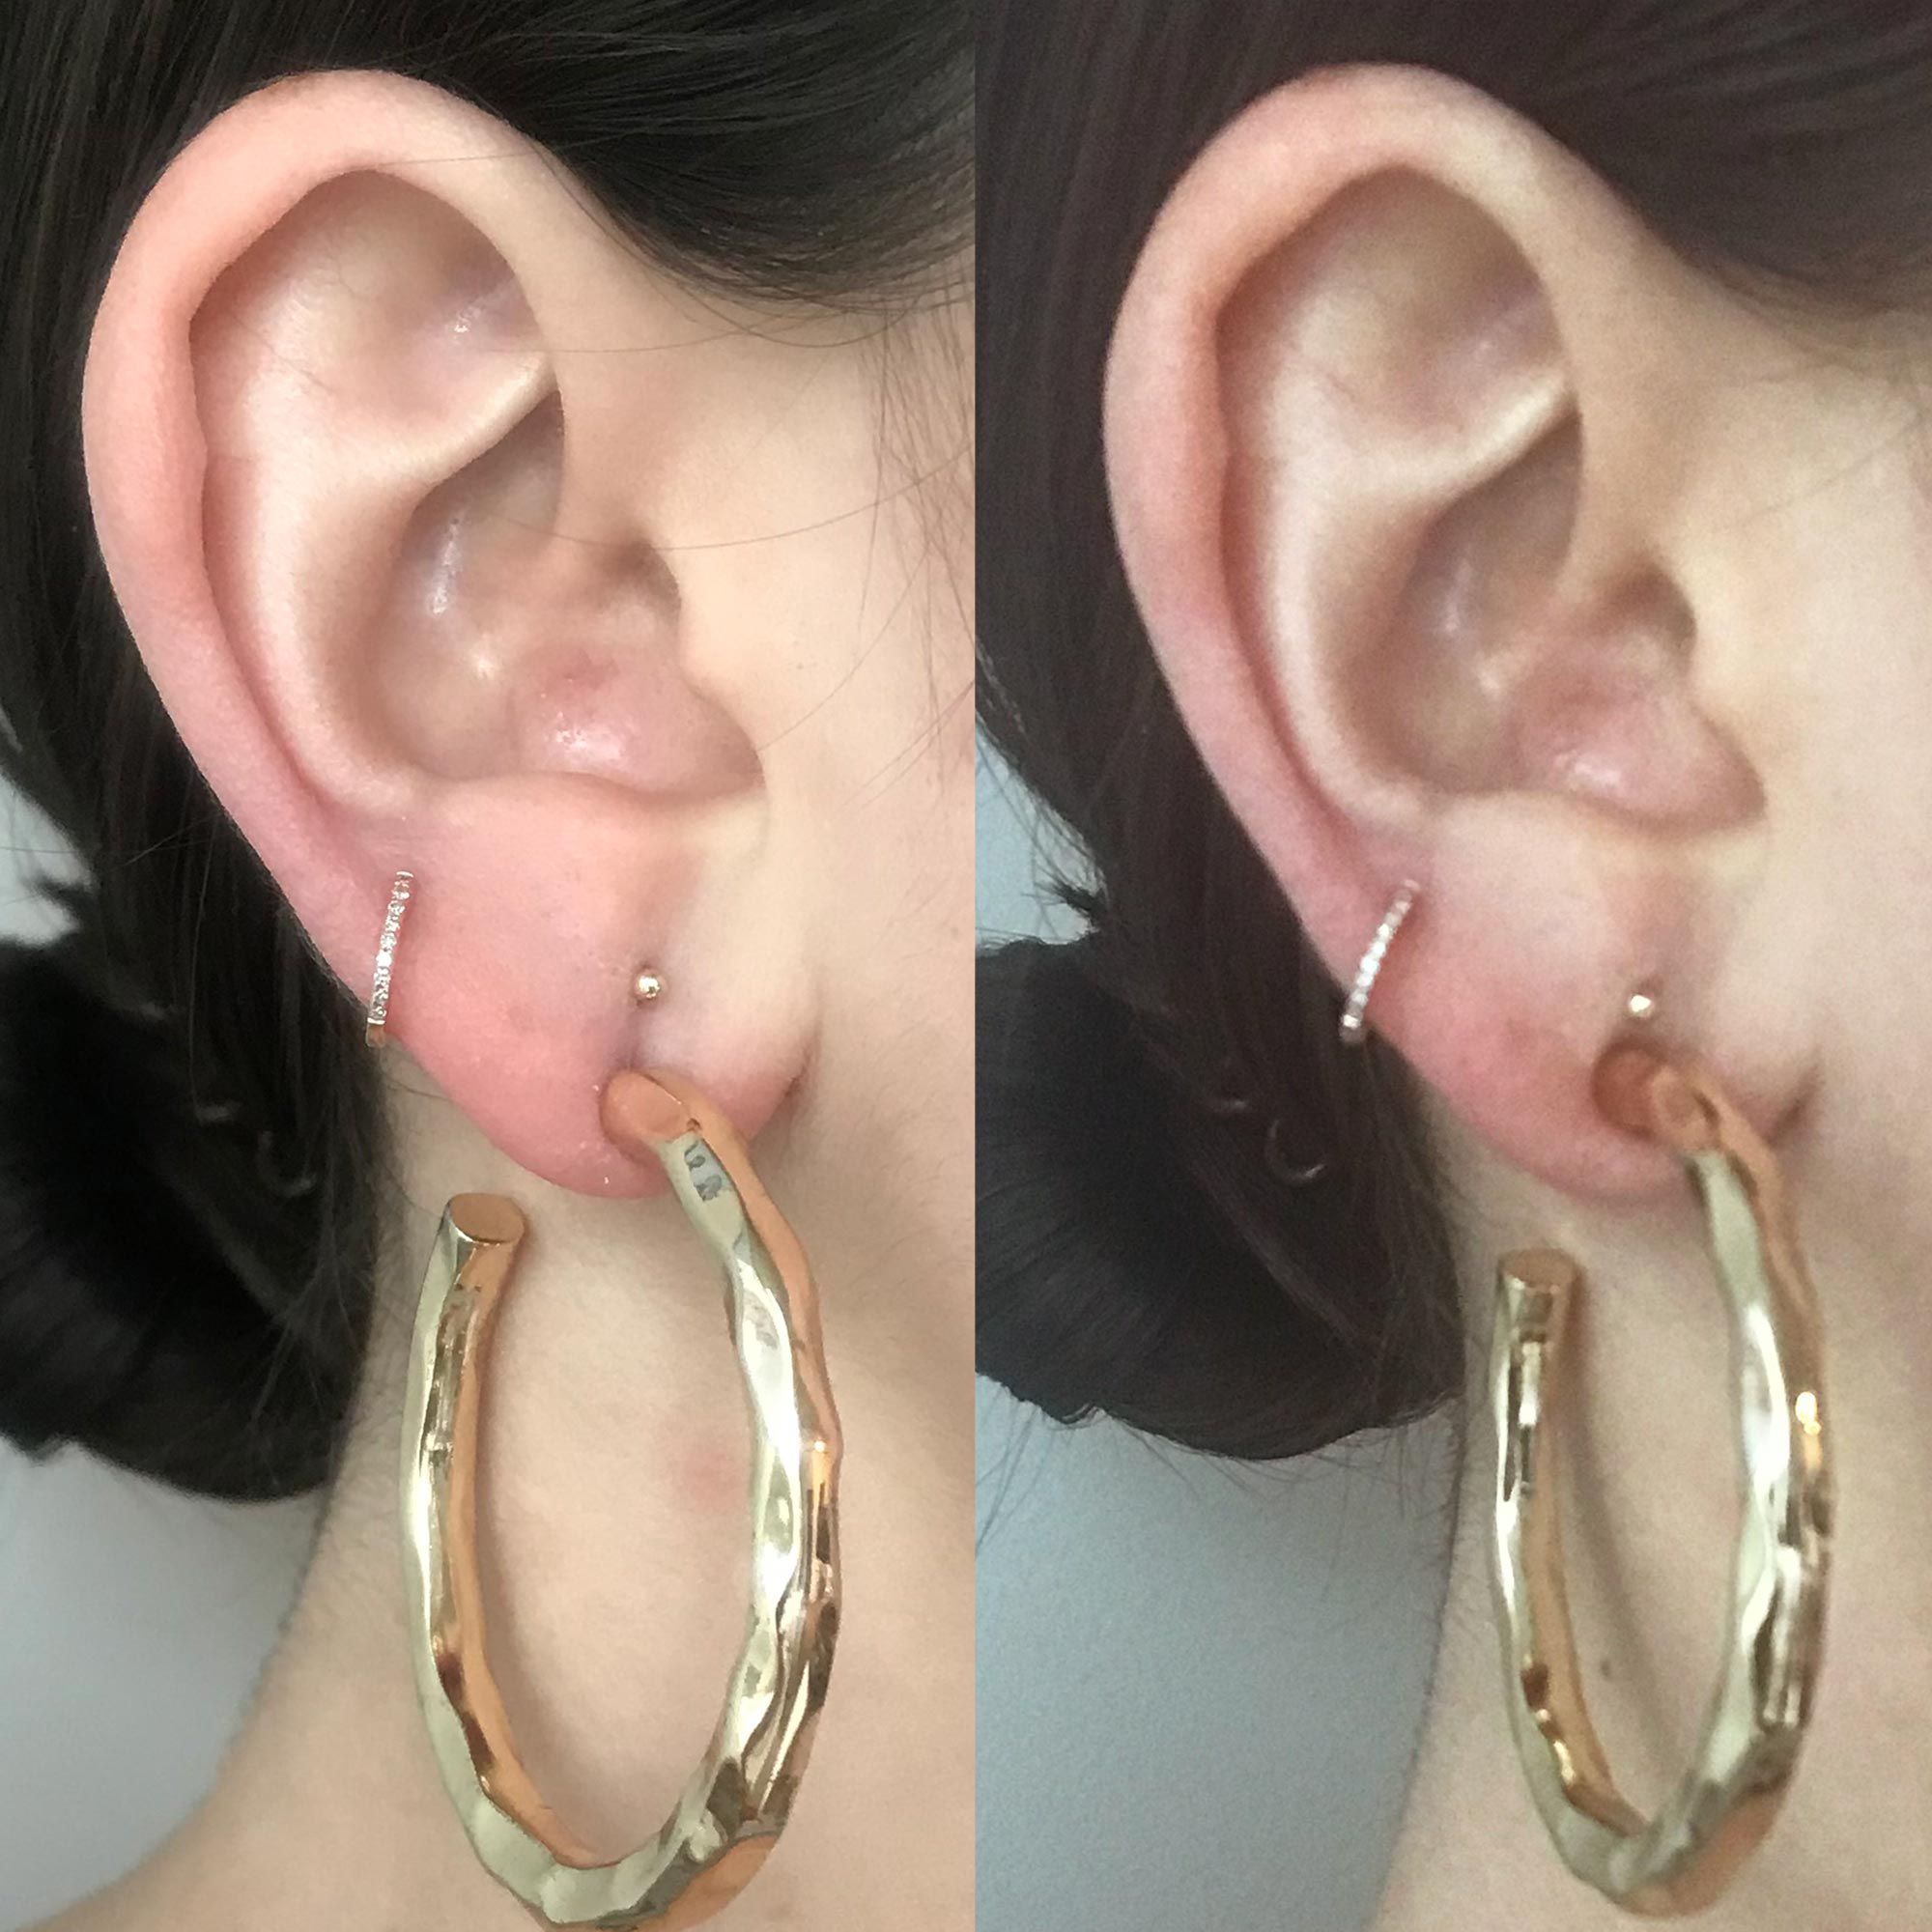 Earring Lifters - Earring Backs Lifts Heavy Stud Earrings, Earlobe Support for Earrings, Heart, Tiara Earring Backs for Heavy Earring, Upgraded